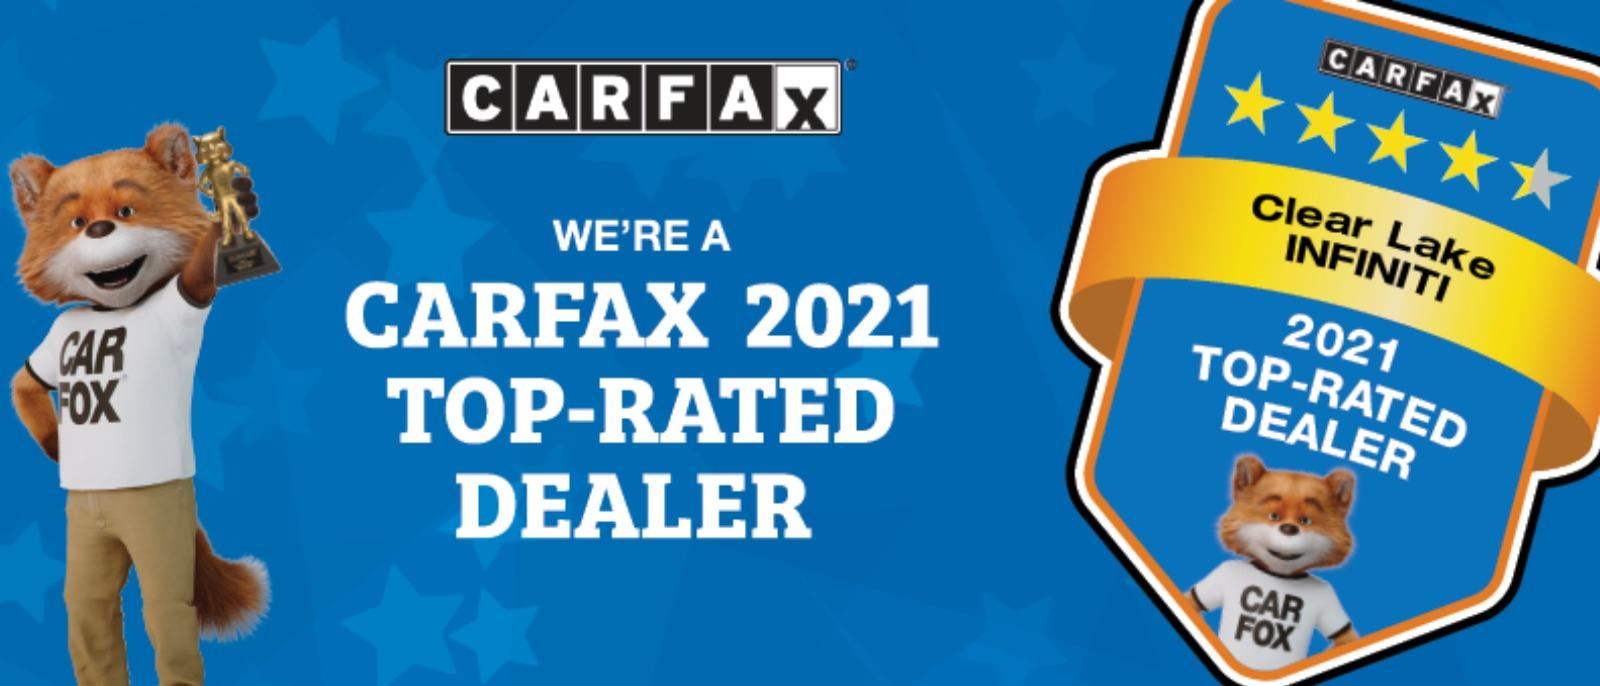 CarFax Award 2021